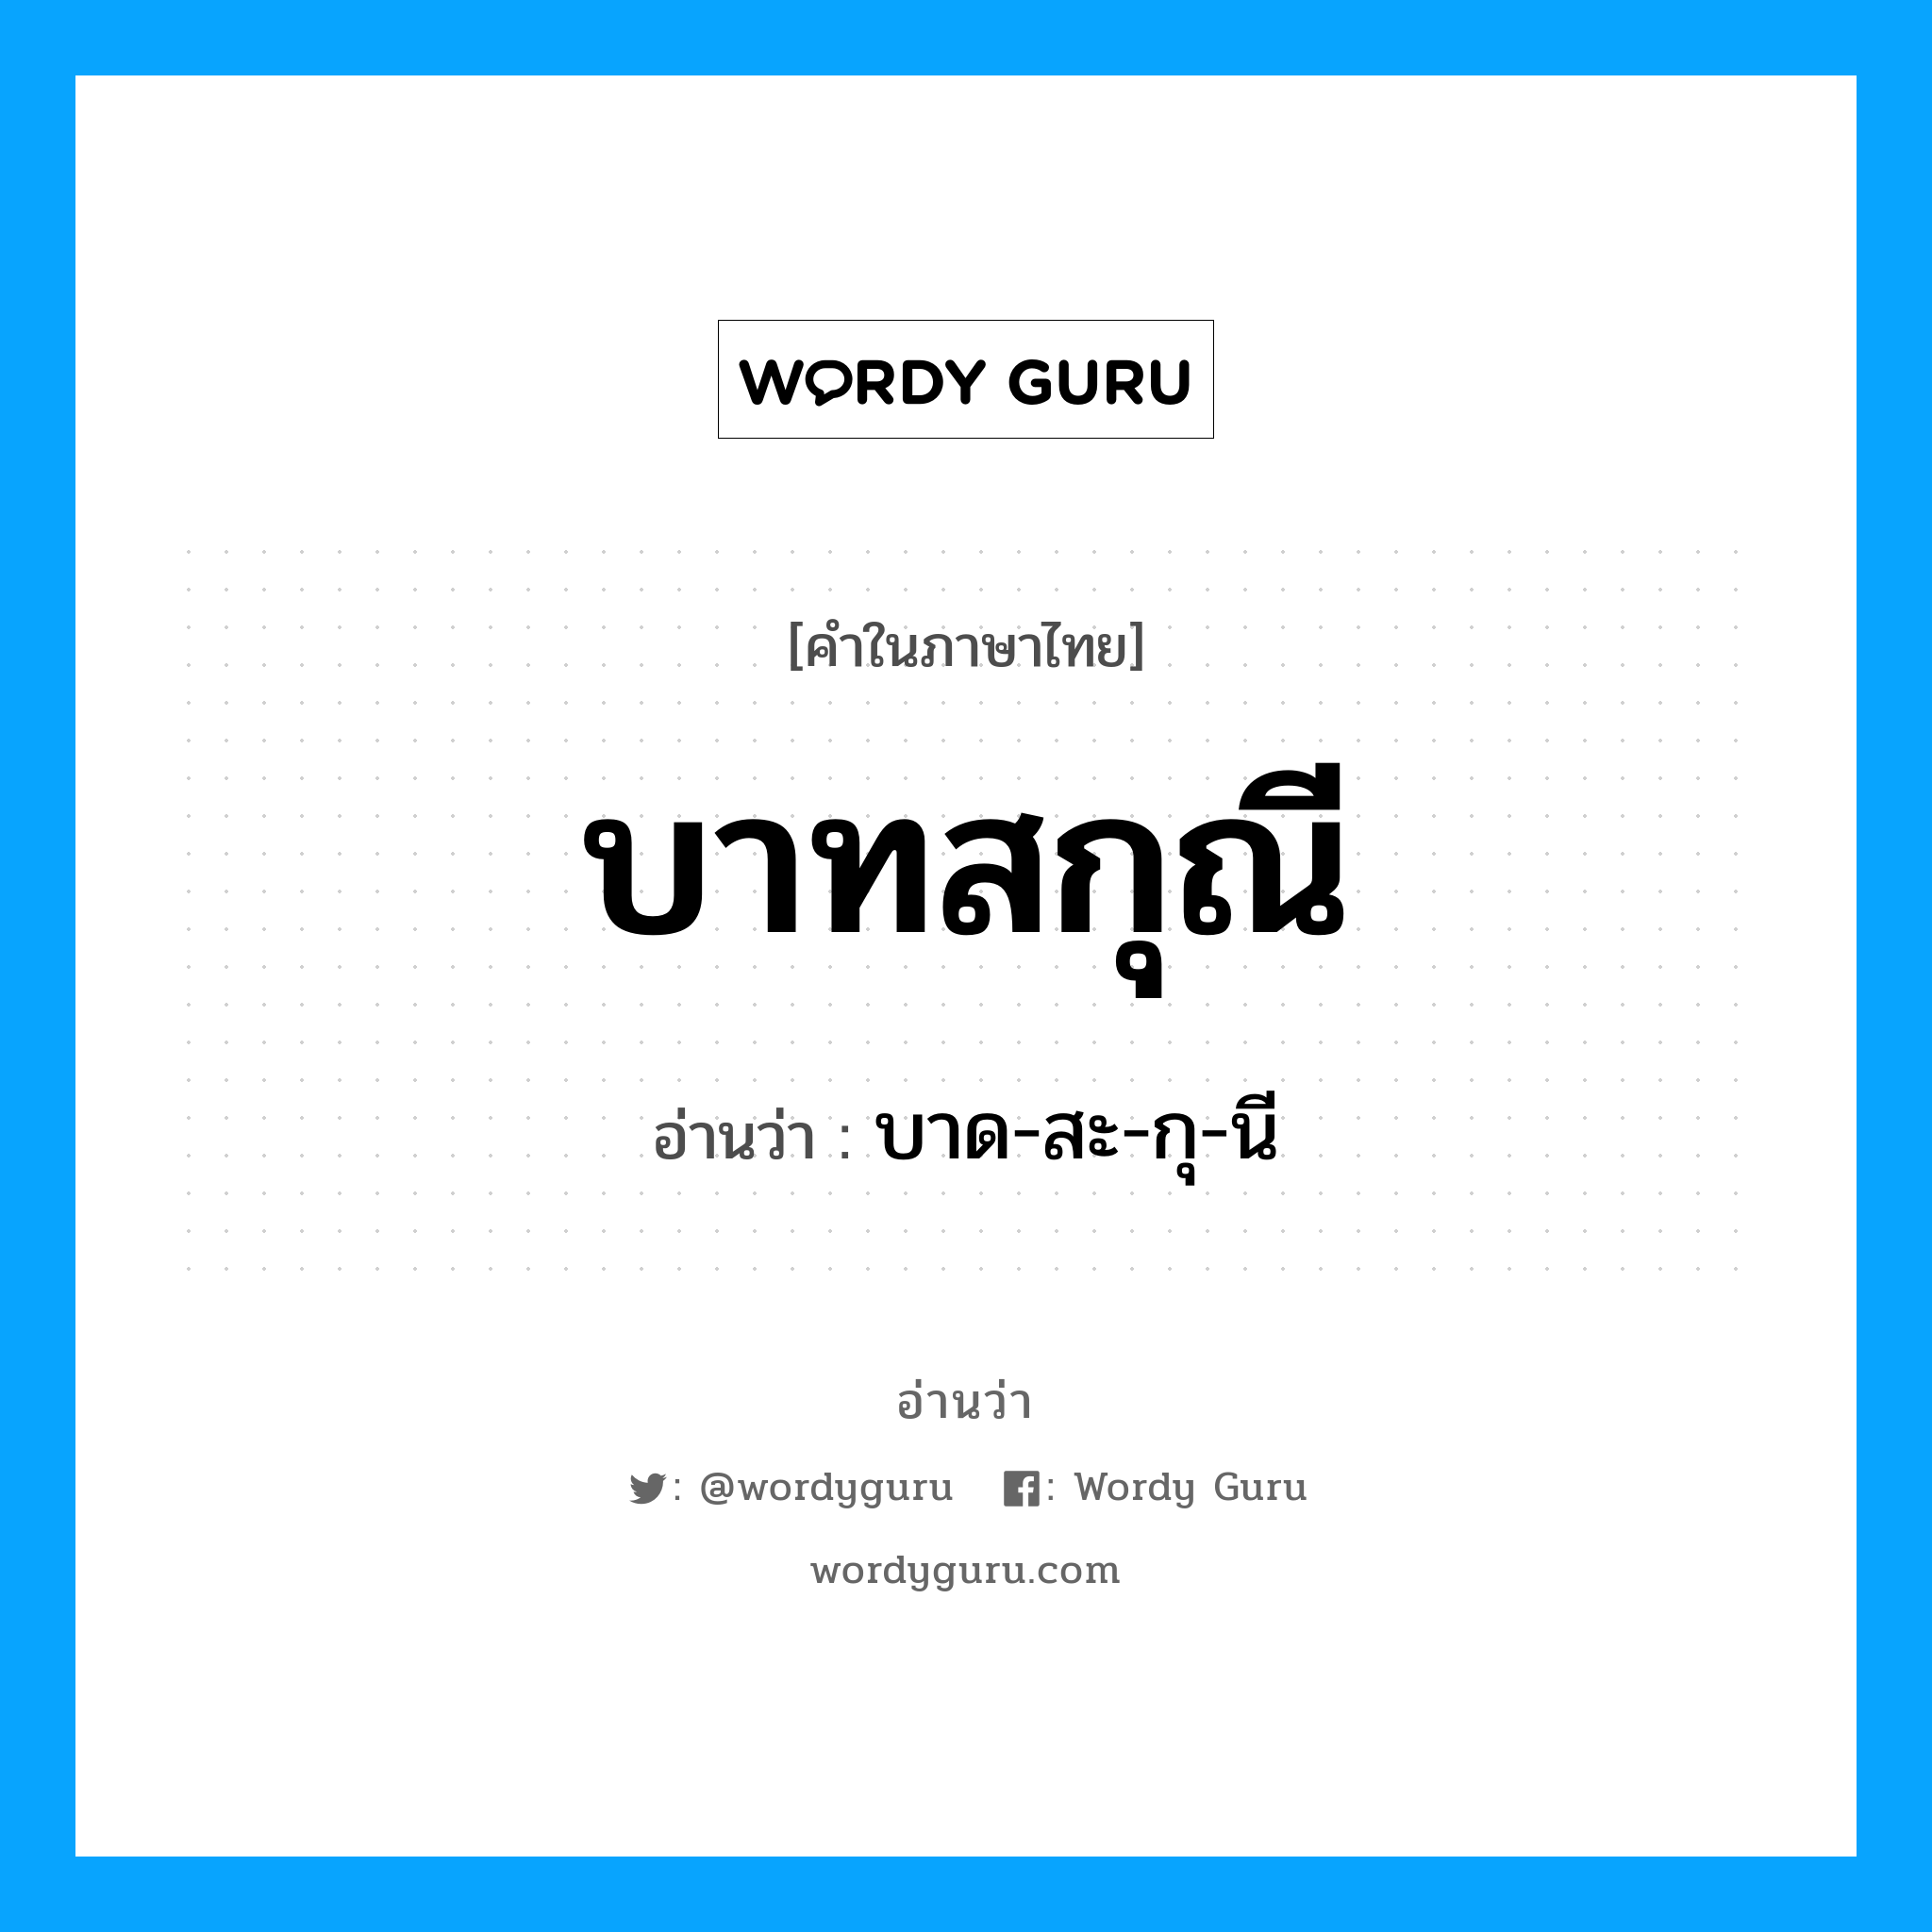 บาด-สะ-กุ-นี เป็นคำอ่านของคำไหน?, คำในภาษาไทย บาด-สะ-กุ-นี อ่านว่า บาทสกุณี